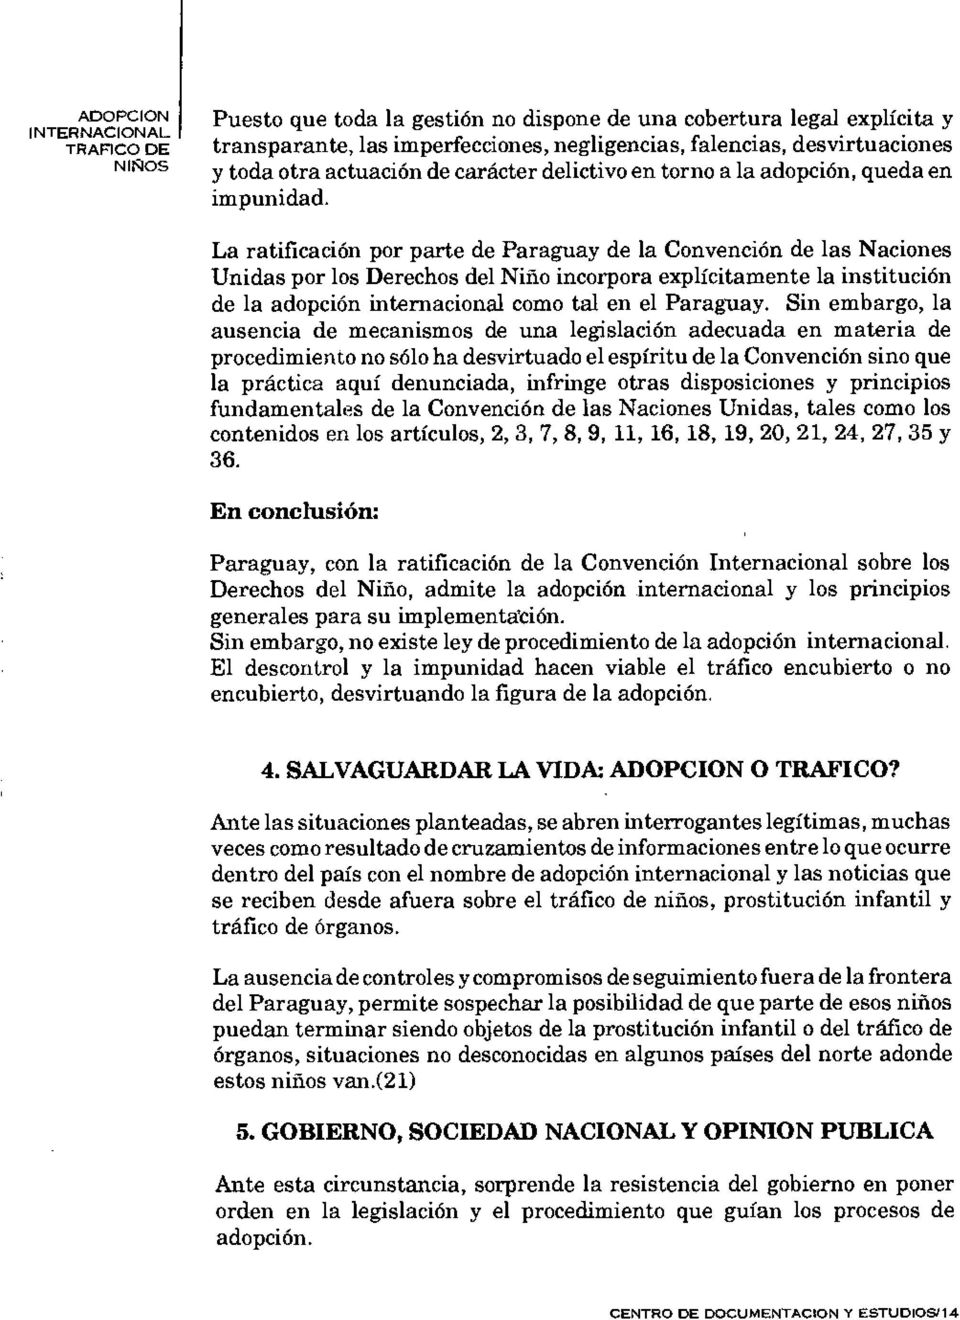 La ratificación por parte de Paraguay de la Convención de las Naciones Unidas por los Derechos del Niño incorpora explícitamente la institución de la adopción internacional como tal en el Paraguay.